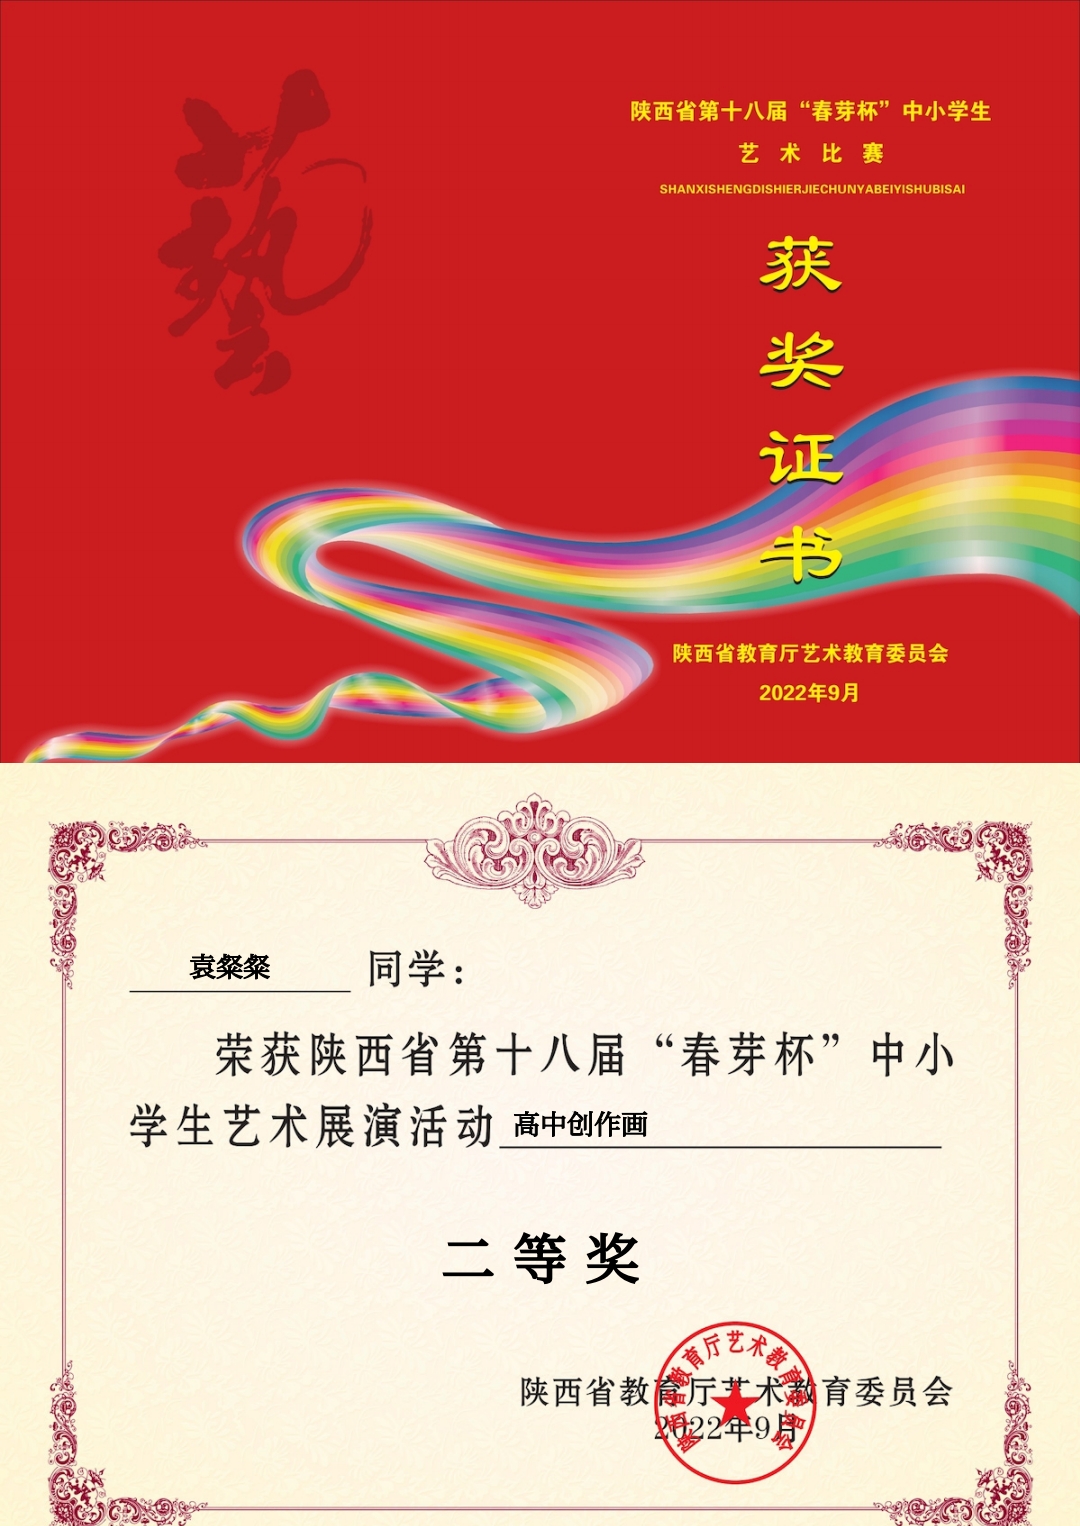 汉阴县职教中心在陕西省第十八届“春芽杯”中小学生艺术展演活动中荣获多个奖项